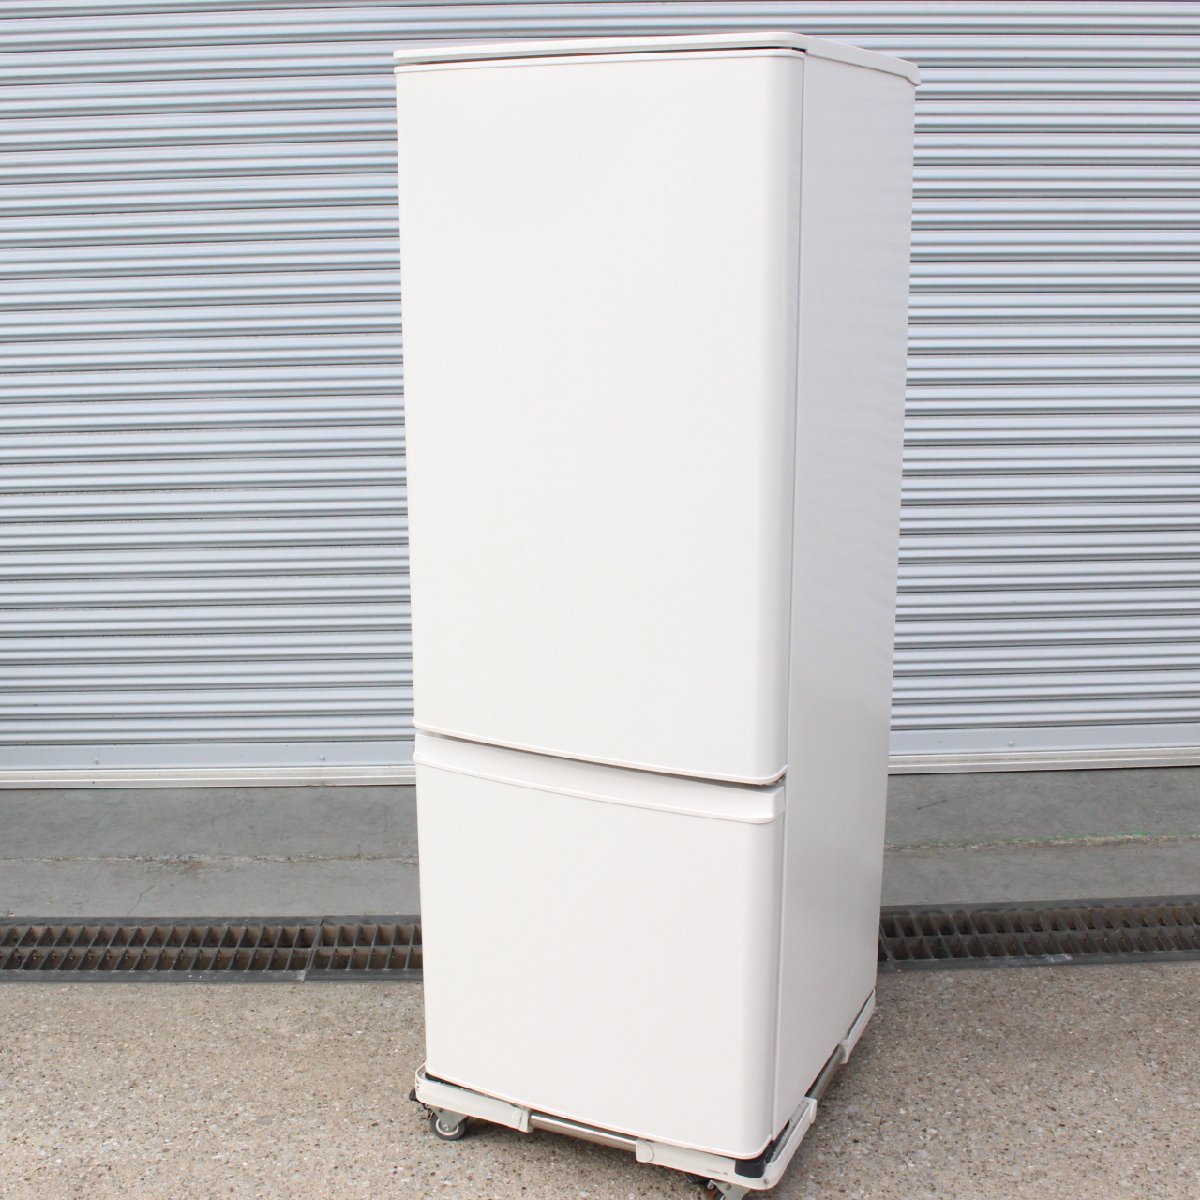 東京都練馬区にて 三菱 2ドア冷蔵庫 MR-P17G 2022年製 を出張買取させて頂きました。